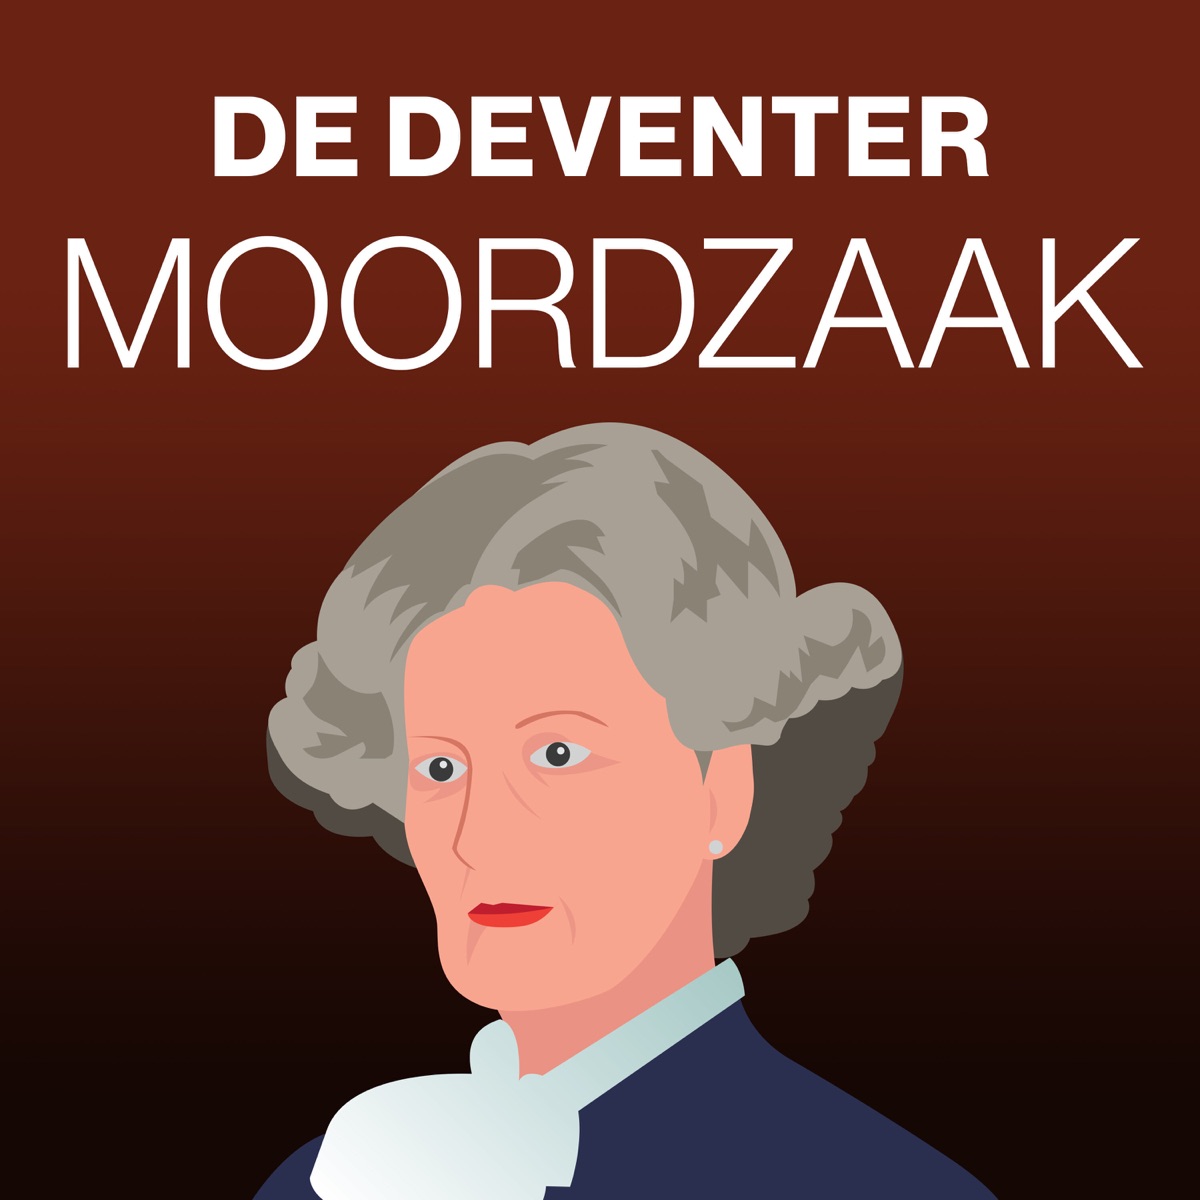 De Deventer Moordzaak